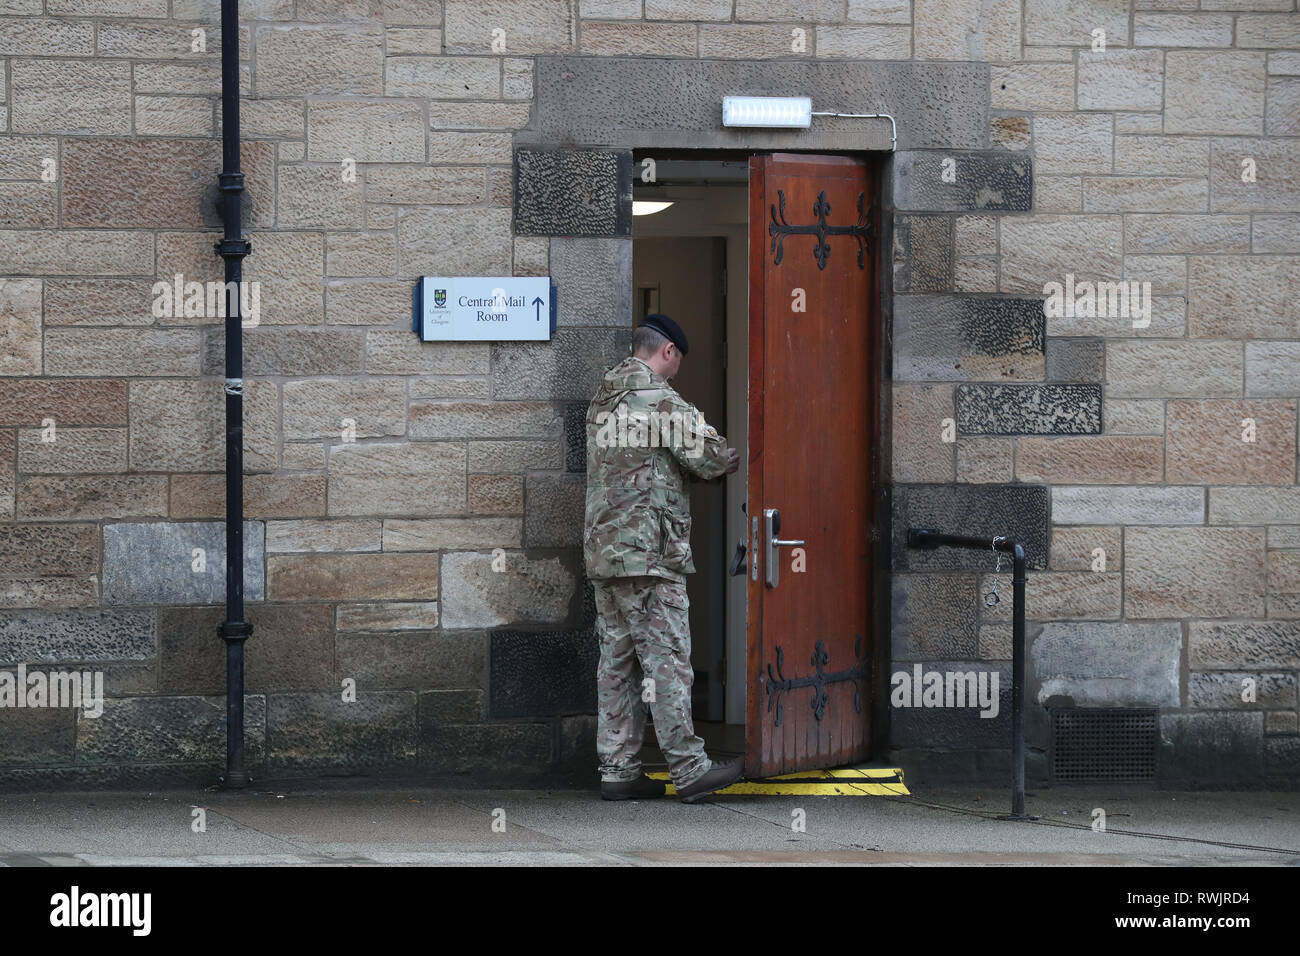 Corps Logistique Royal bomb disposal personnel à l'extérieur la salle du courrier de l'Université de Glasgow, où un colis suspect a été trouvé conduisant à l'évacuation de l'immeuble. Banque D'Images